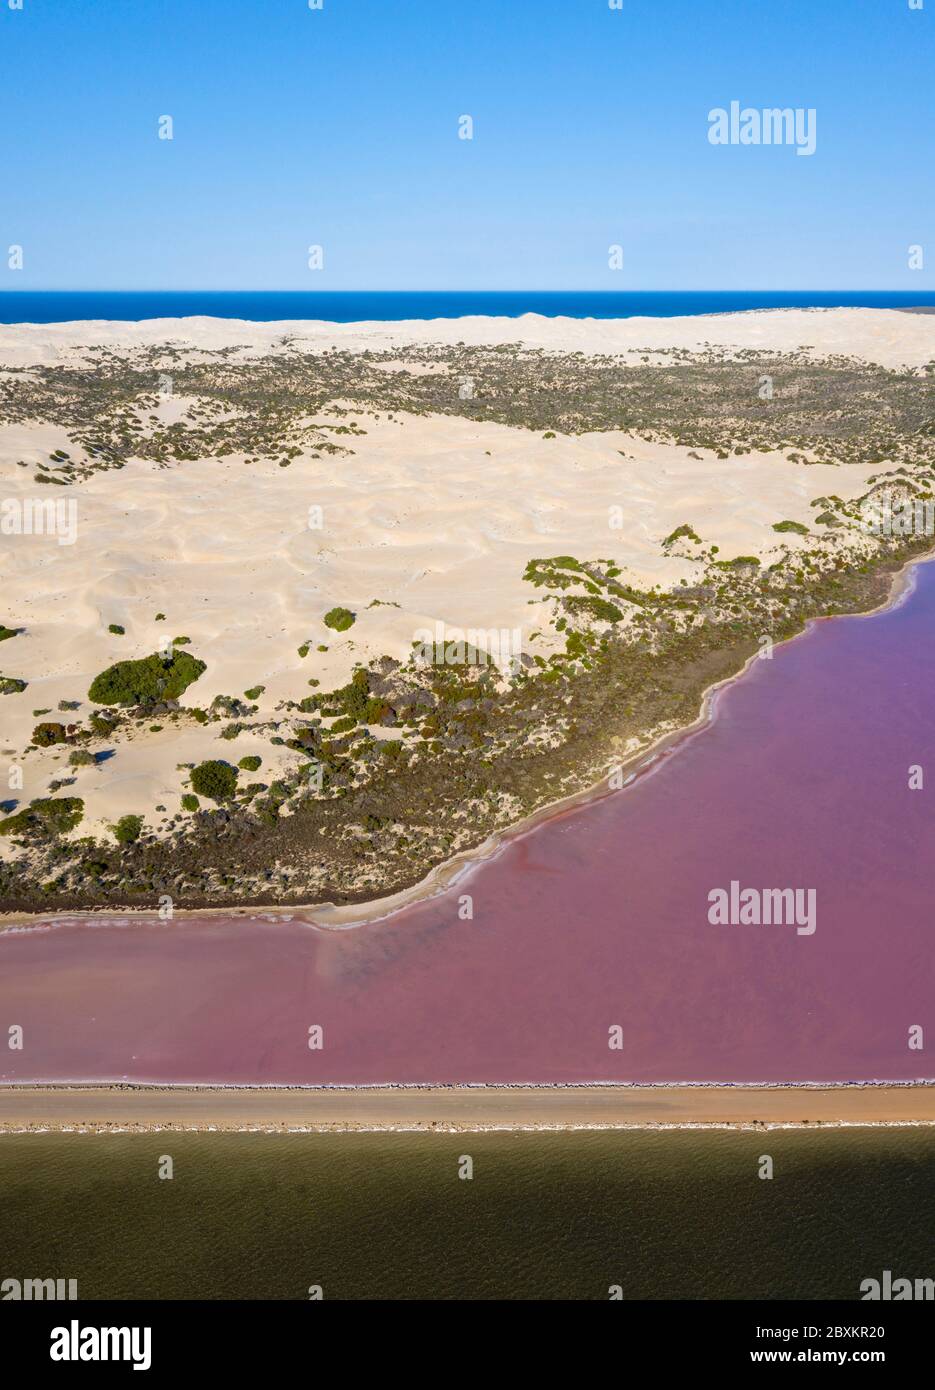 Vue aérienne du lac MacDonnell, un lac naturel de sel rose situé près de Penong en Australie méridionale Banque D'Images